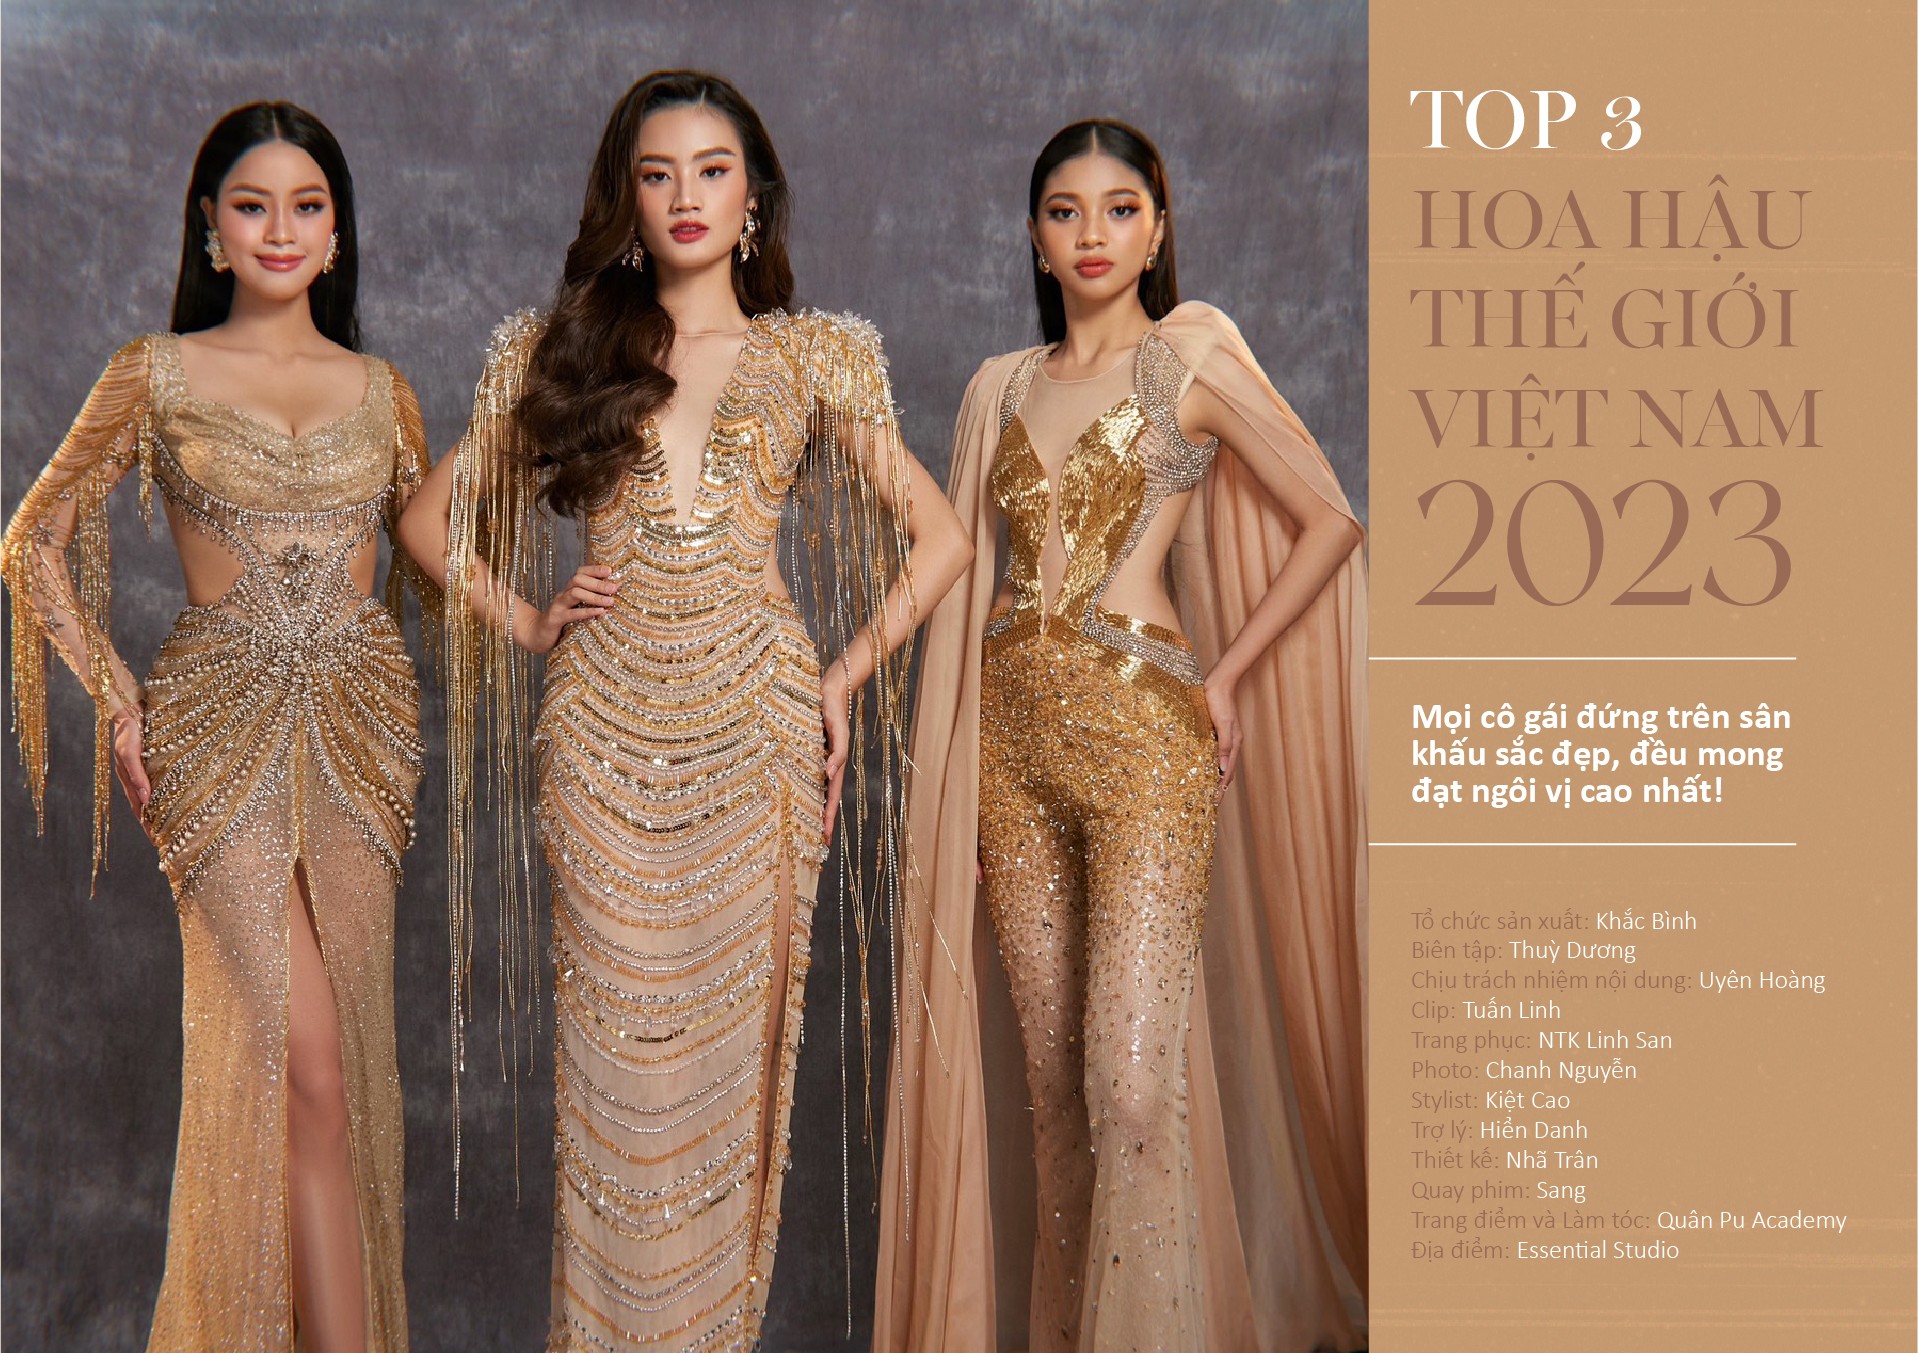 Top 3 Miss World Vietnam 2023: Mọi cô gái đứng trên sân khấu sắc đẹp, đều mong đạt ngôi vị cao nhất! - 21